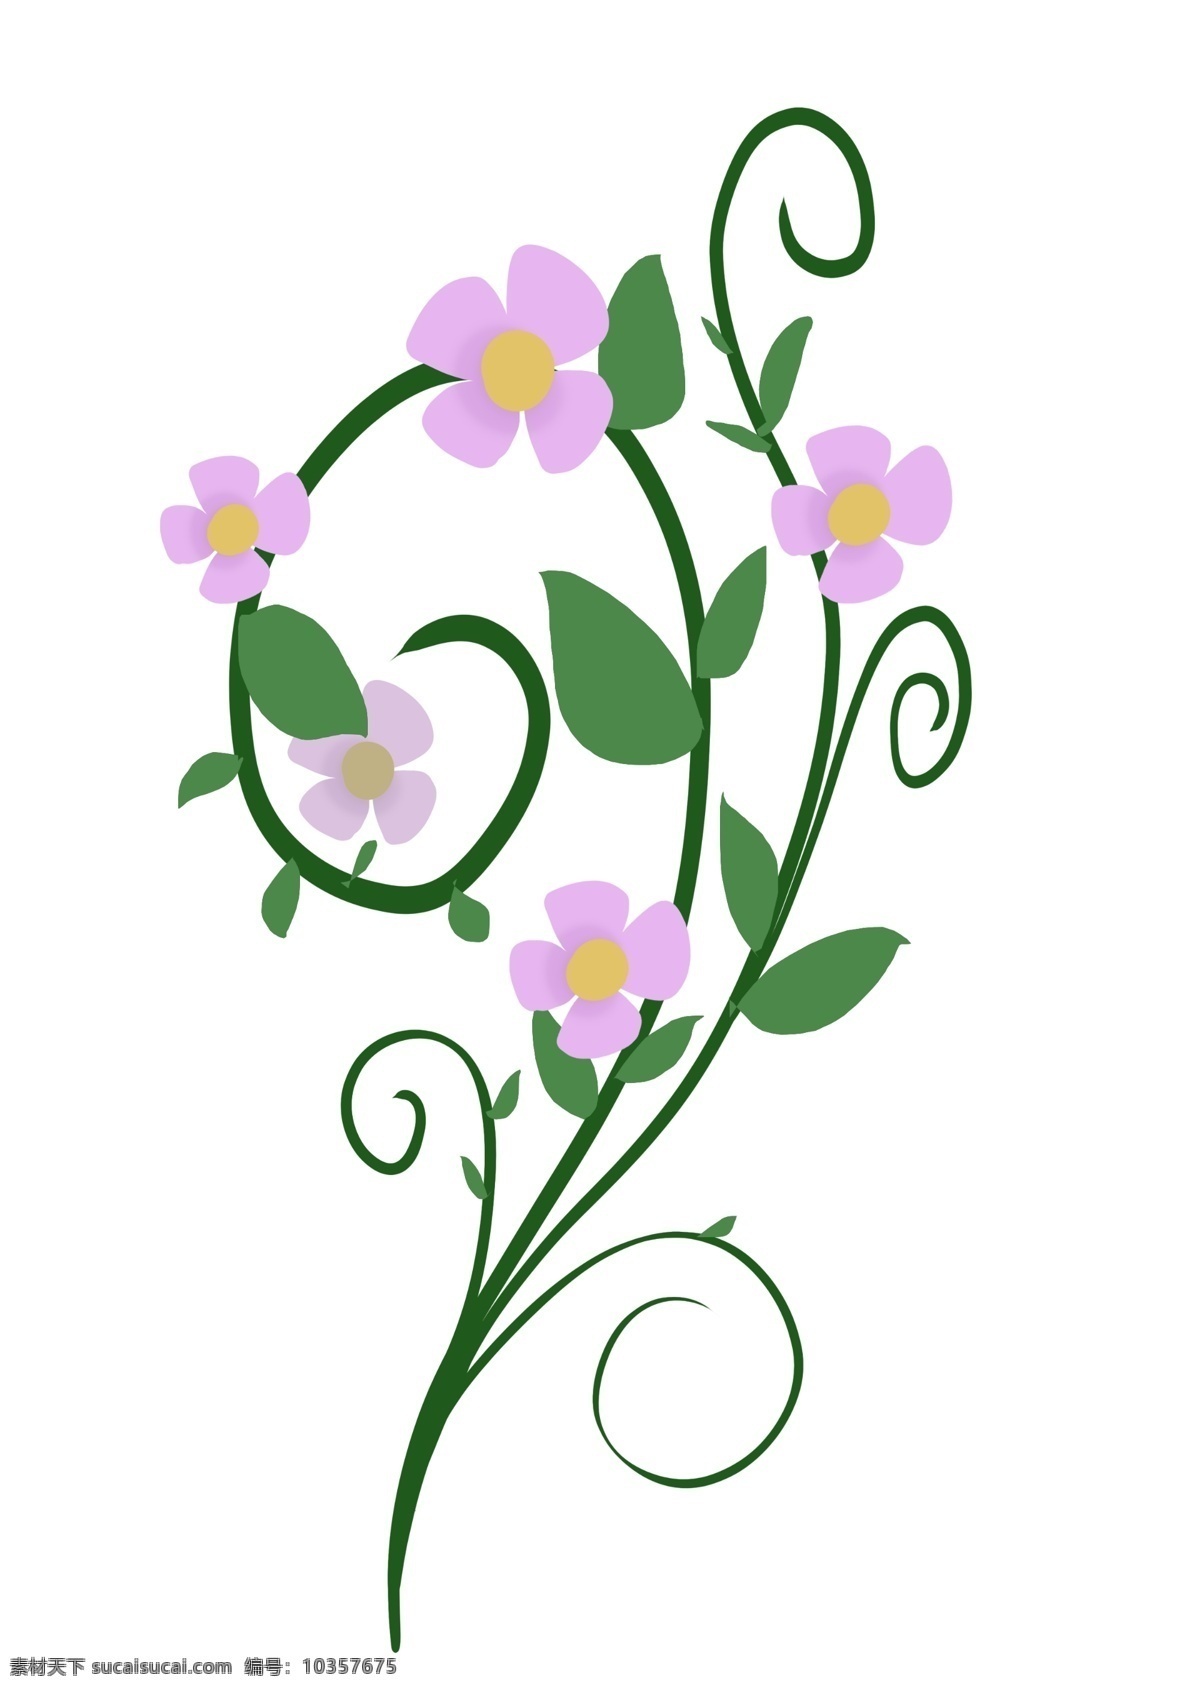 紫色 花朵 藤蔓 叶子 紫色的花朵 小花 藤蔓叶子 花藤 花草 春天植物 花卉 卡通 可爱枝藤 绿叶